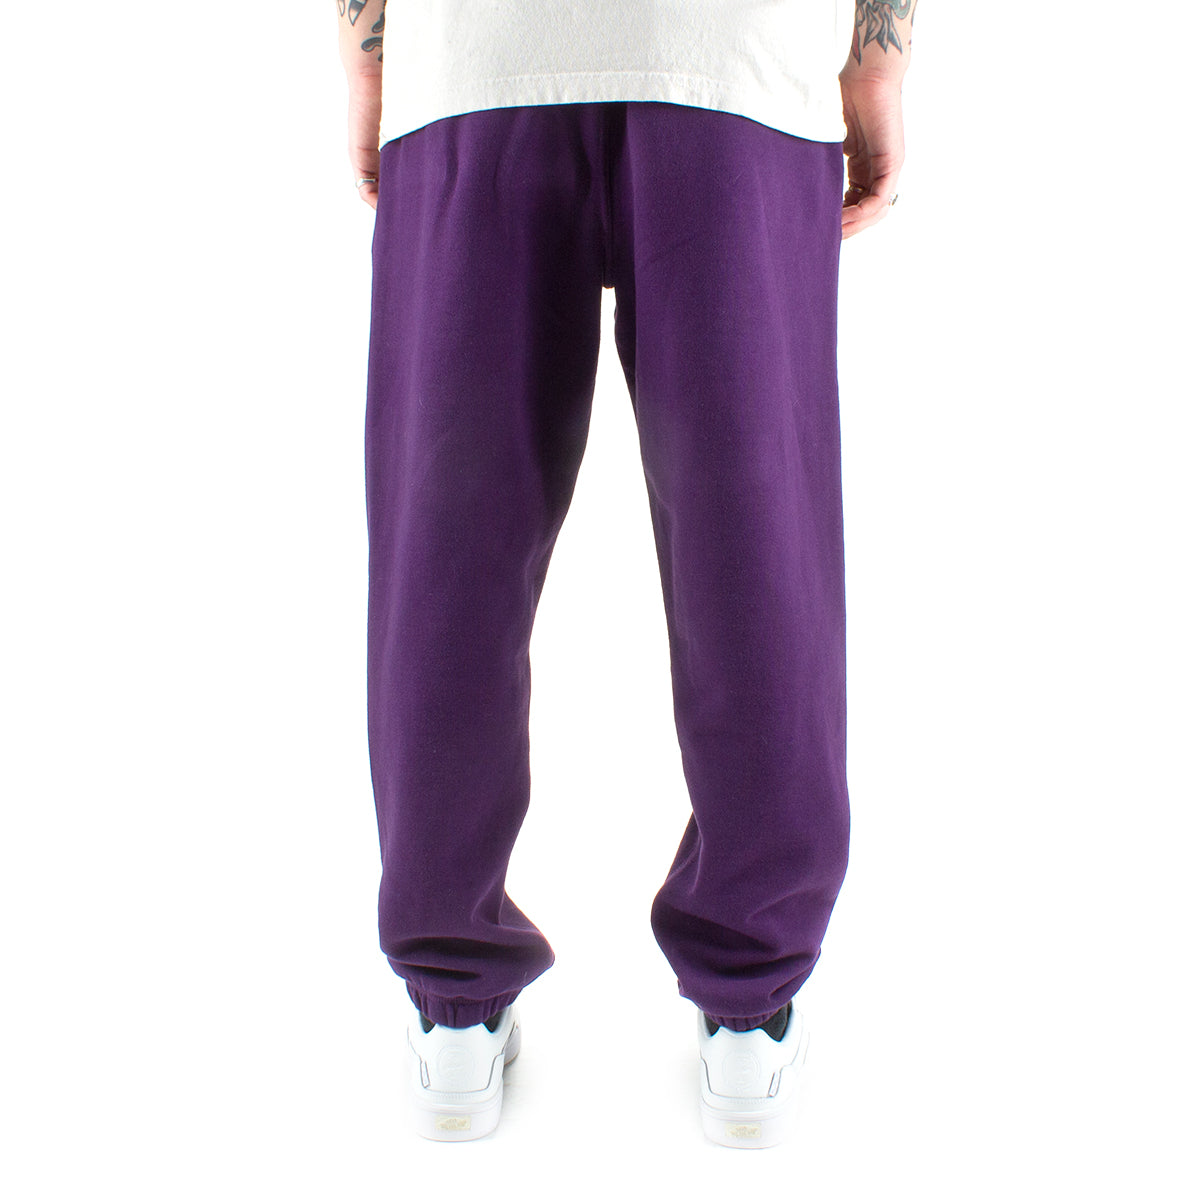 Vans x Alltimers Dorm Fleece Pant  Purple